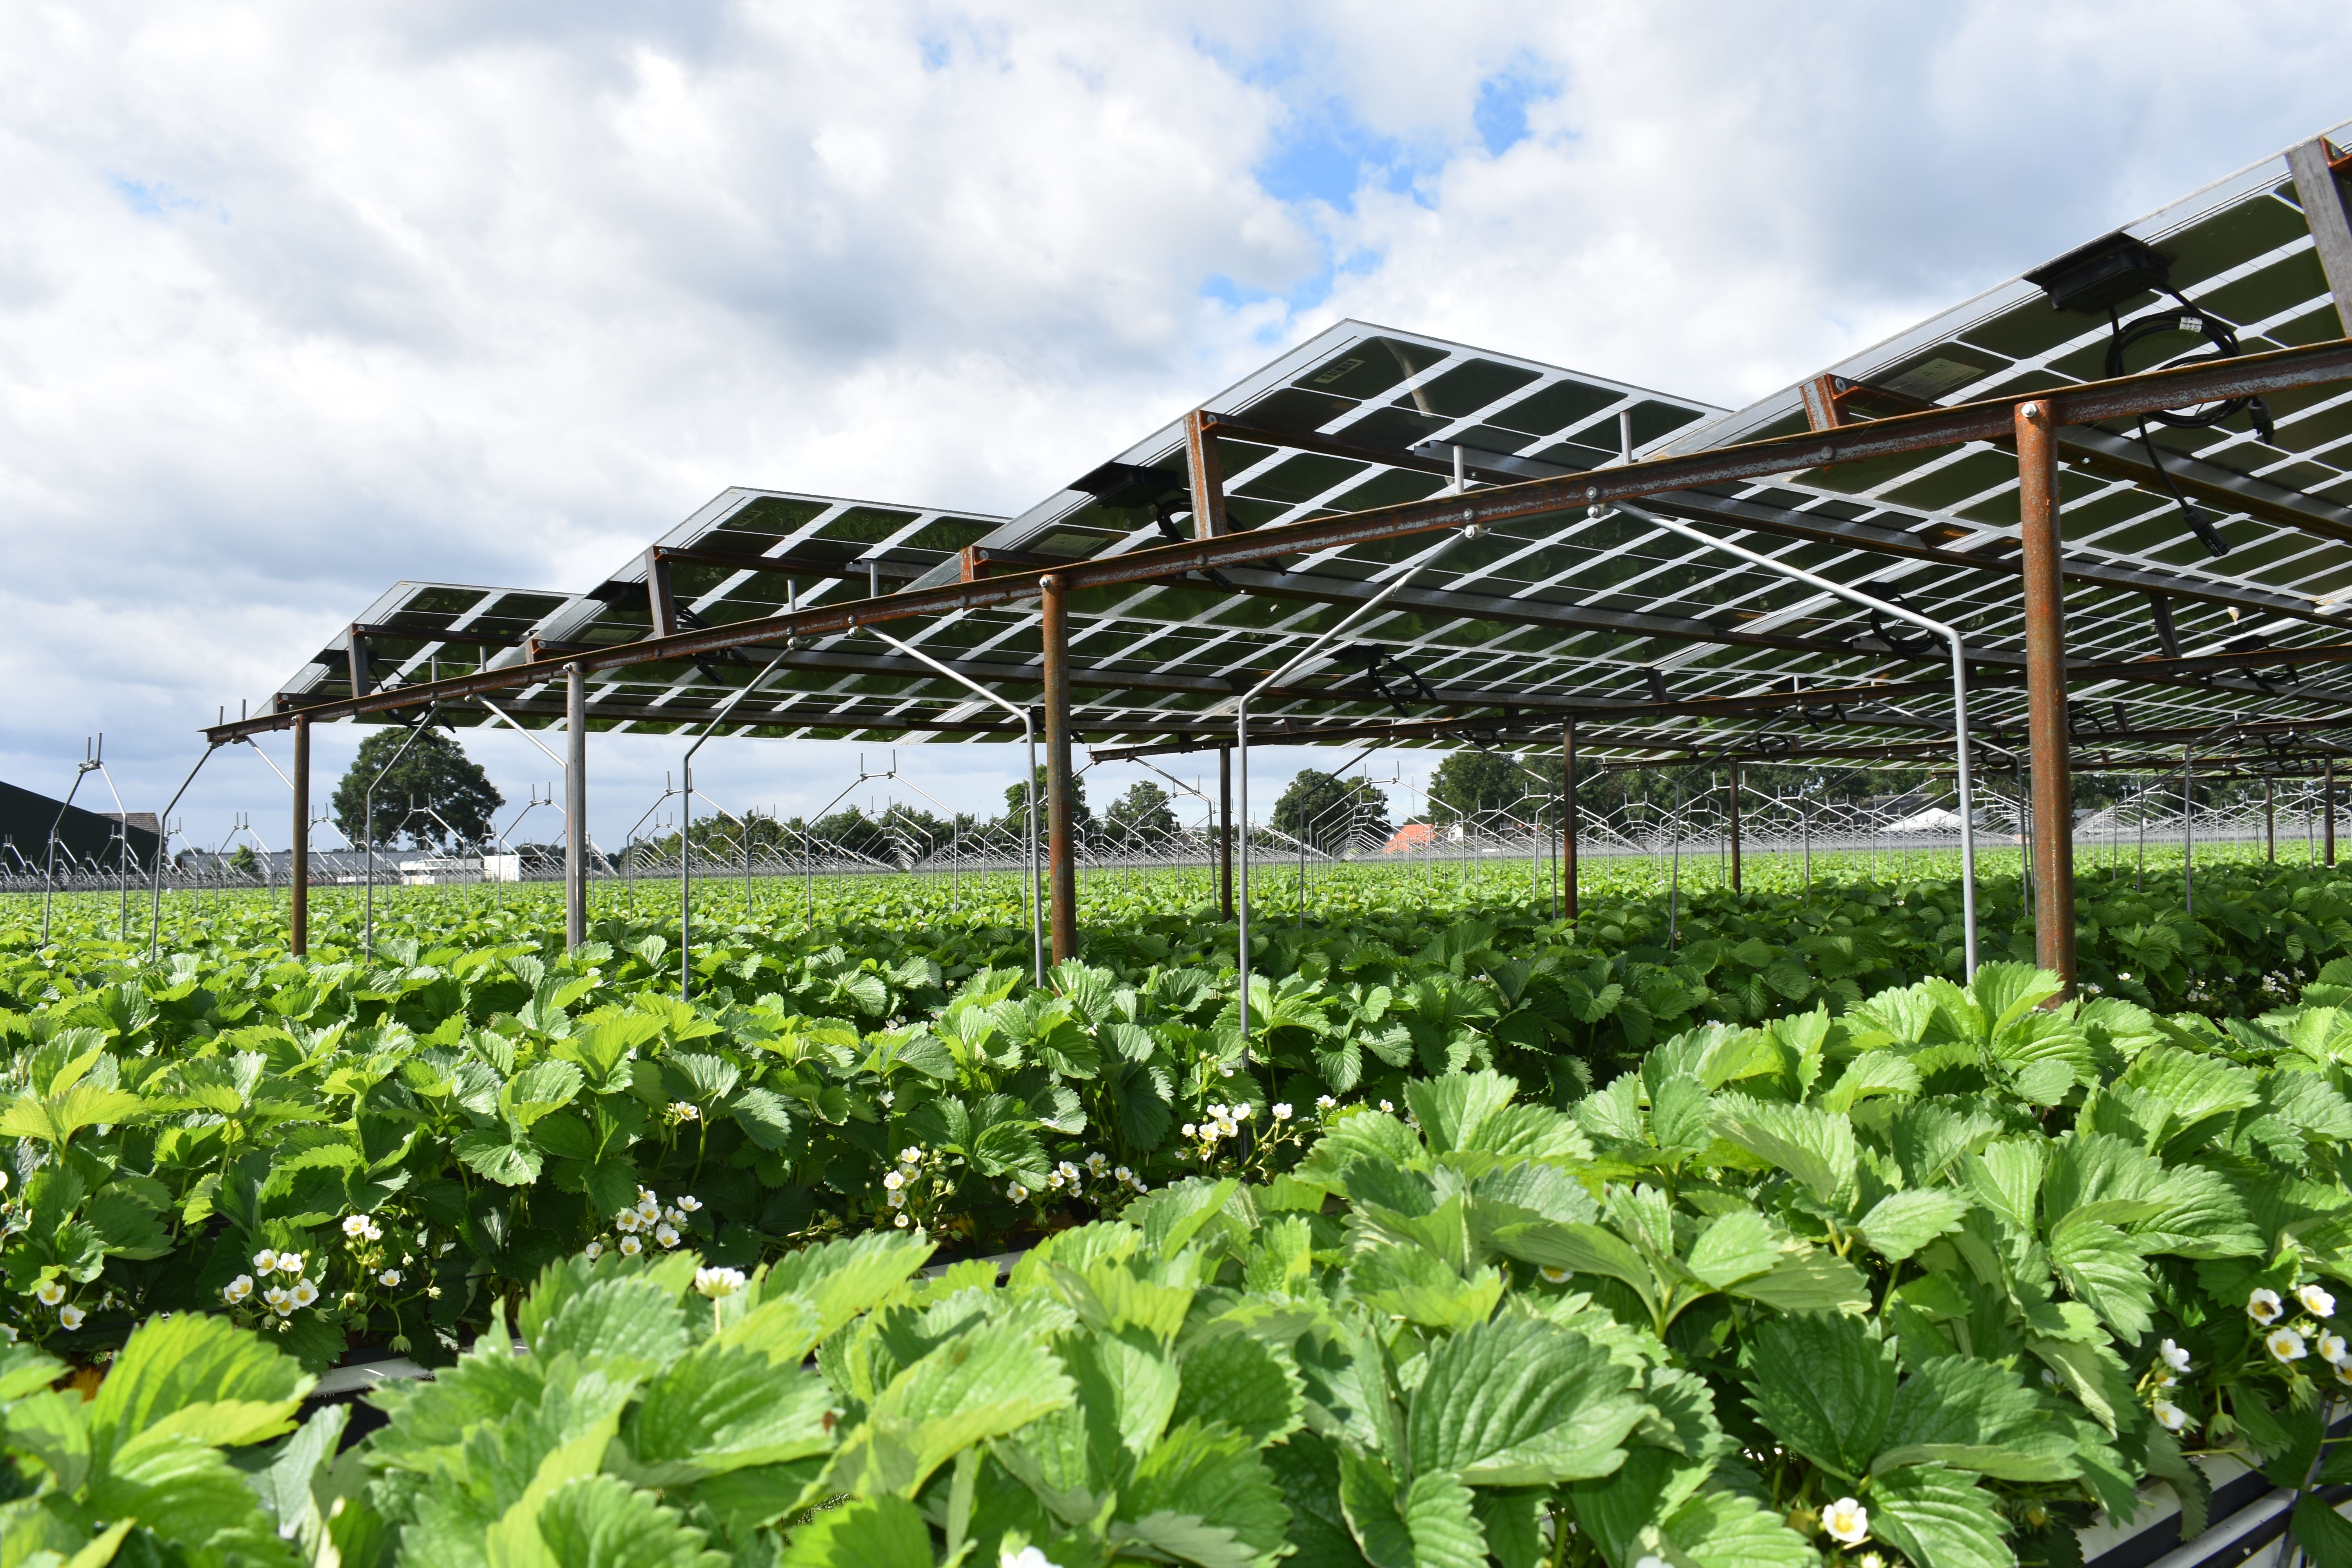 歐洲發展農業太陽能的挑戰與政策規劃趨勢